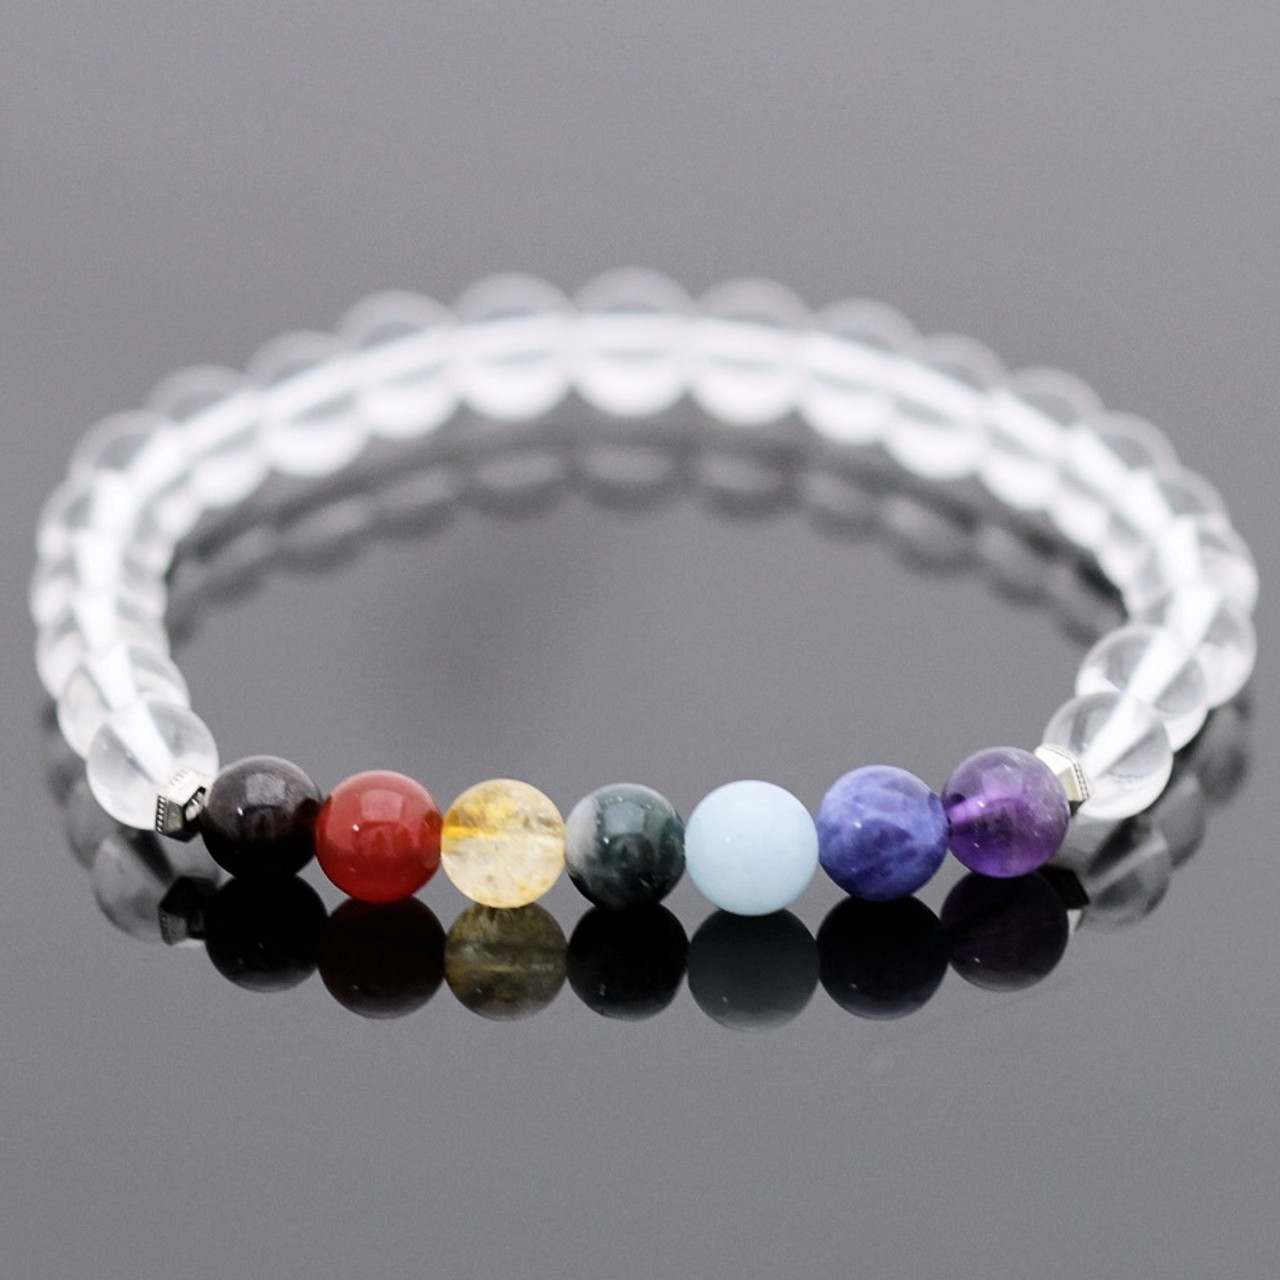 Chakra Stretch Bracelet Kit - Crystal Quartz Gemstones